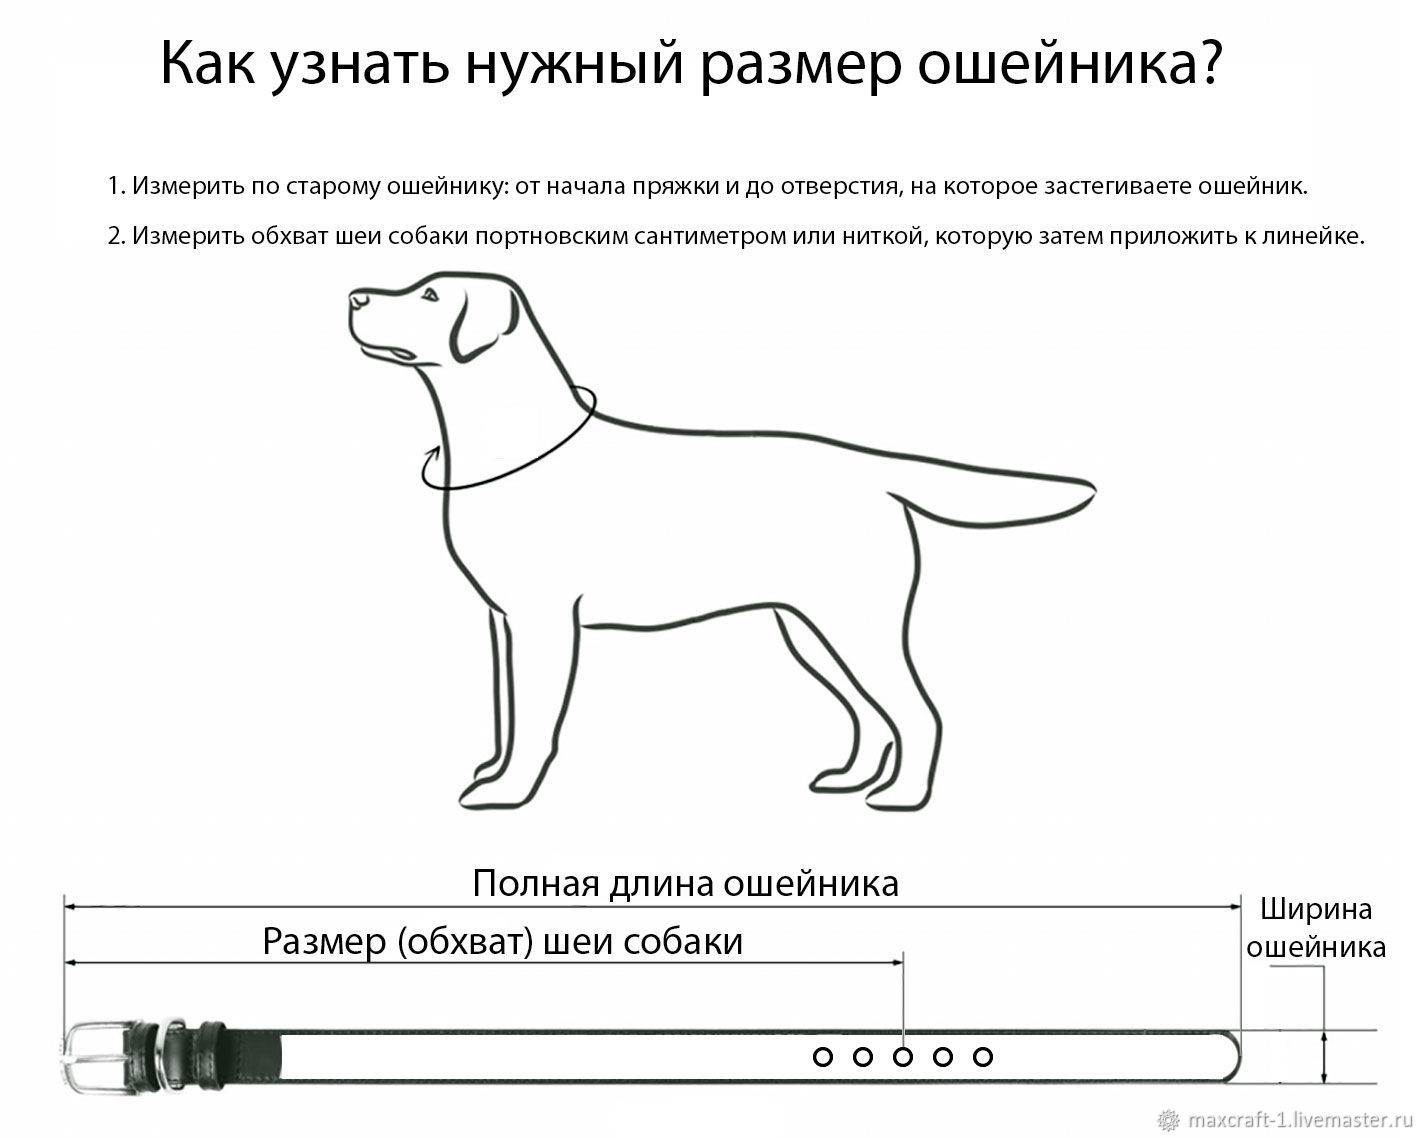 Ошейник для собаки своими руками: пошаговый мастер-класс изготовления в домашних условиях. 150 фото идей для начинающих